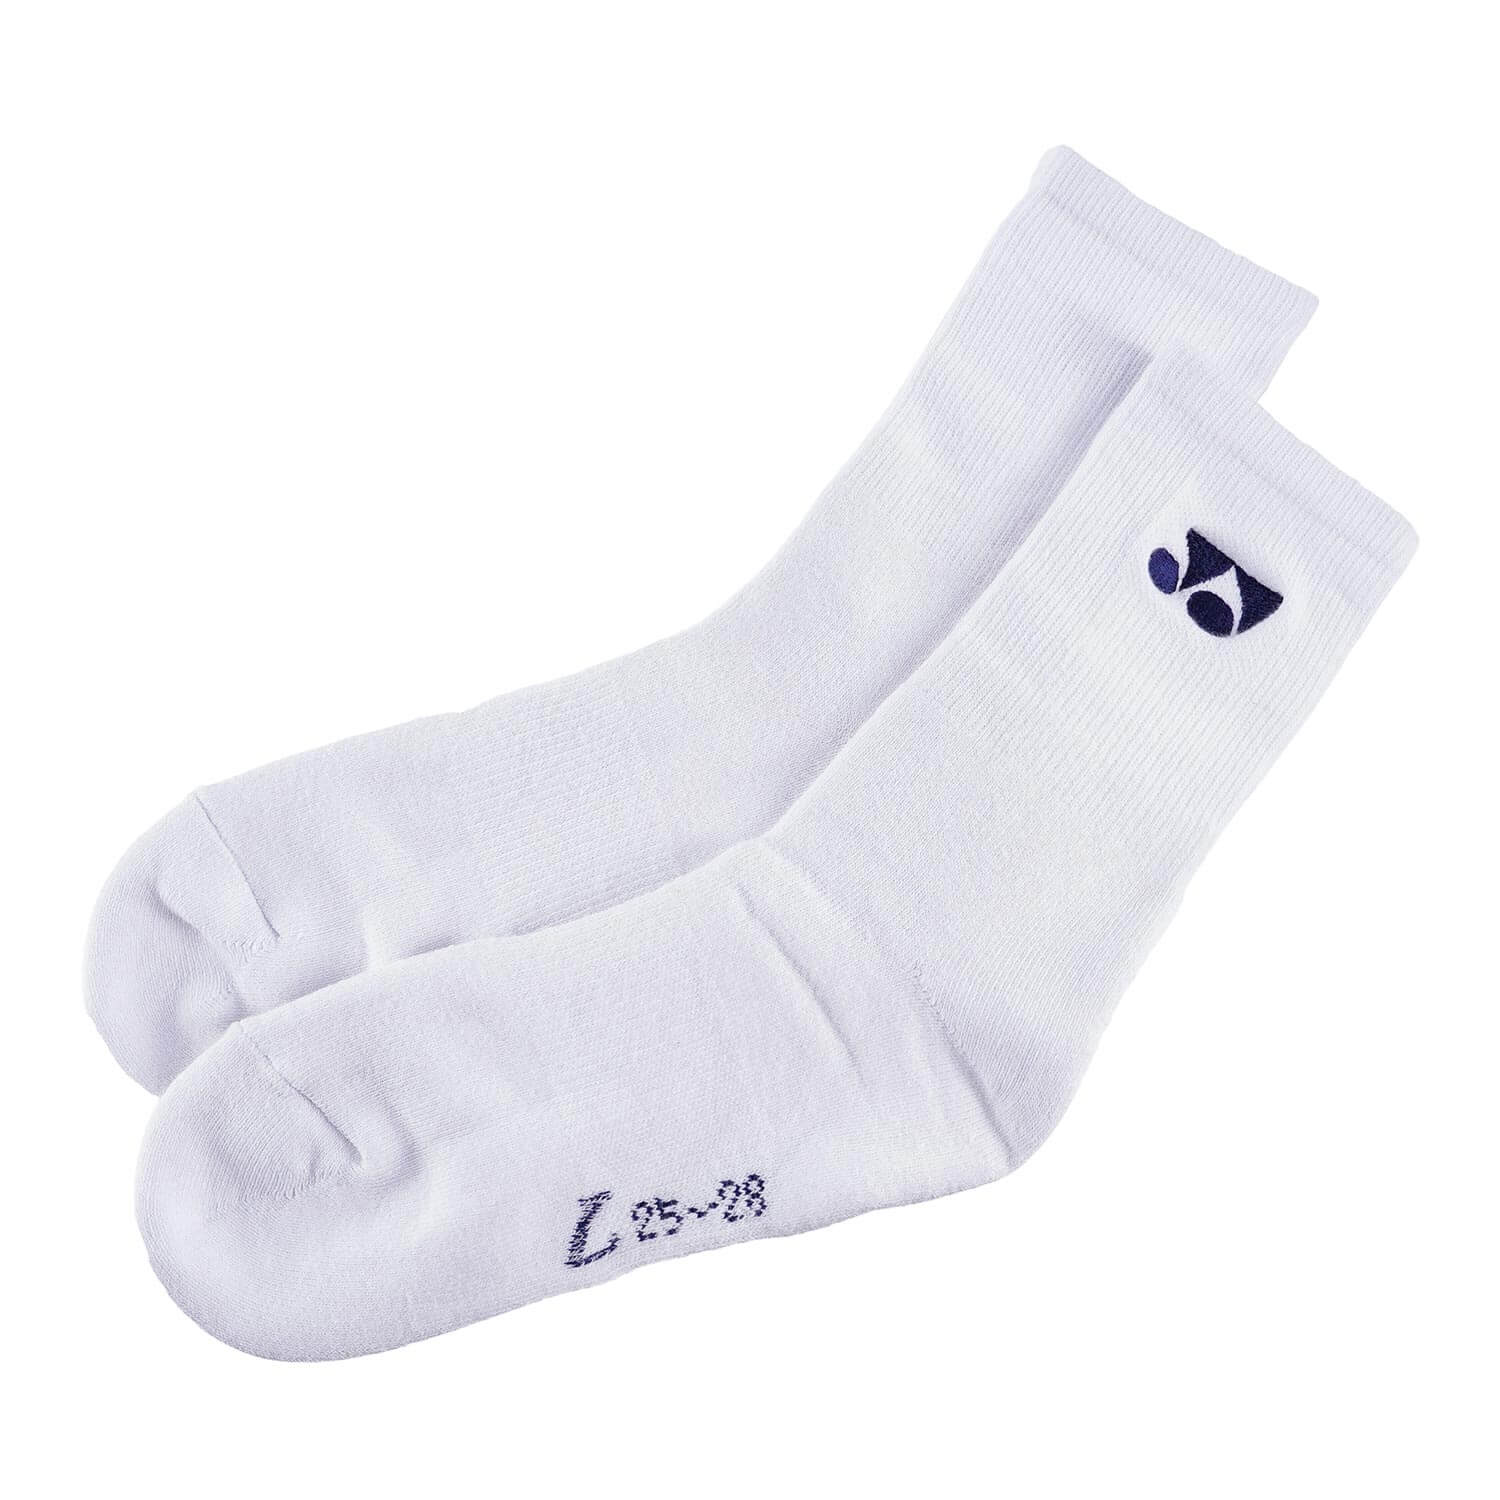 Yonex Men's Sports Socks 19120 (White)